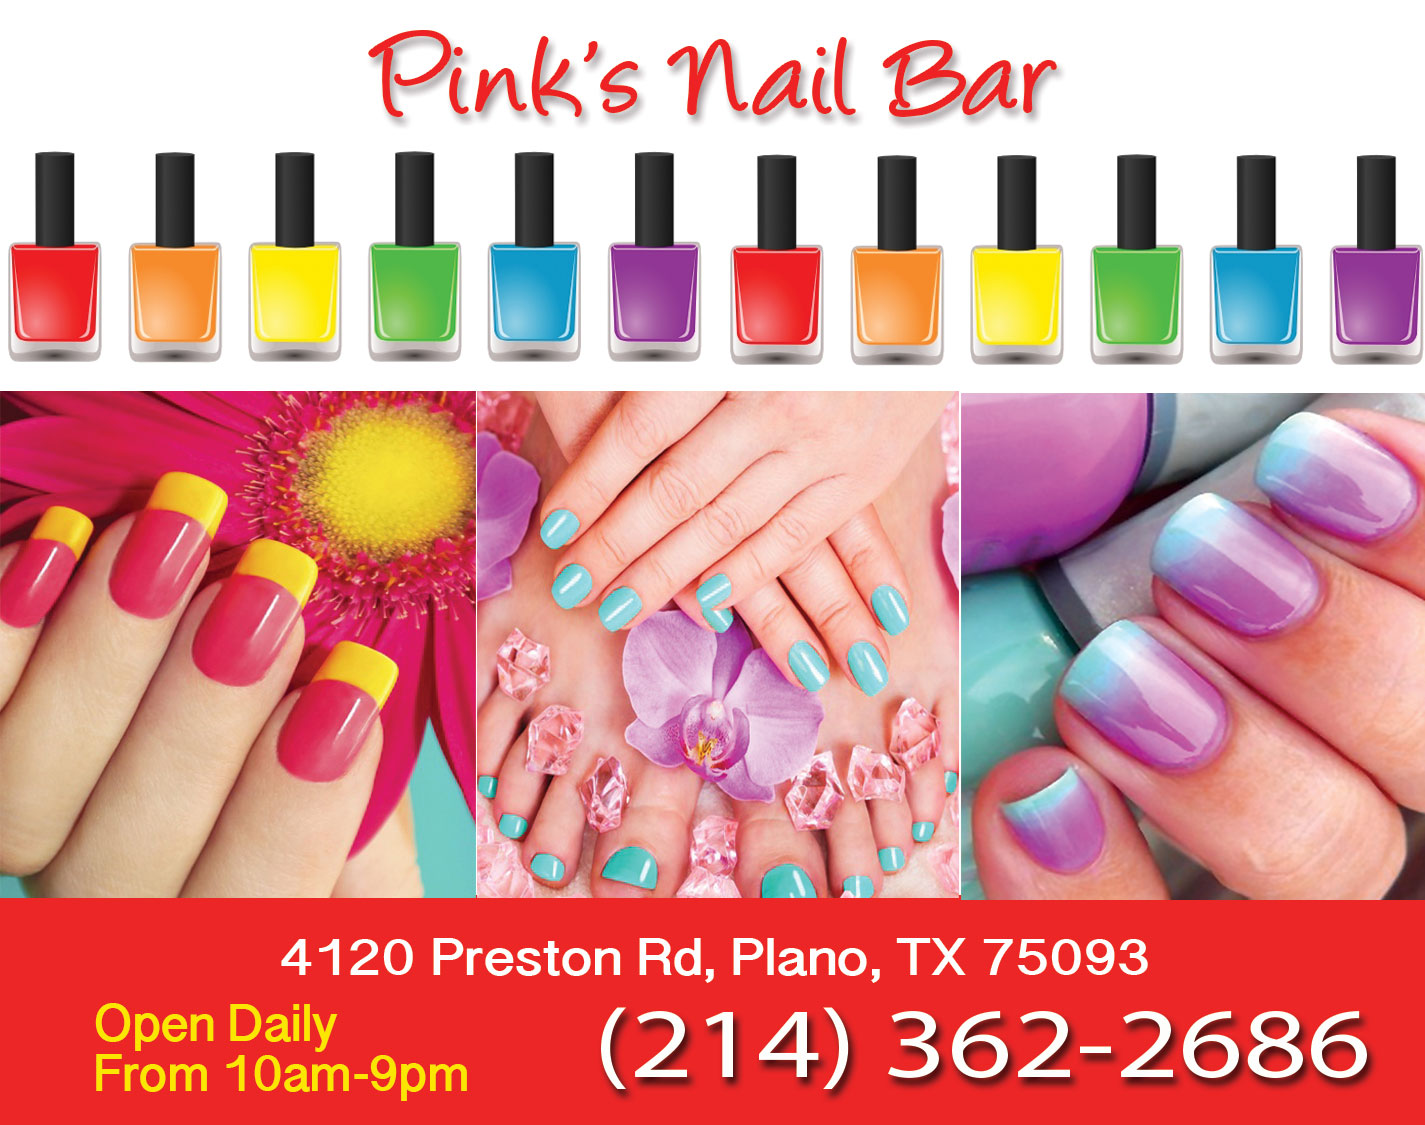 Pink's Nail Bar